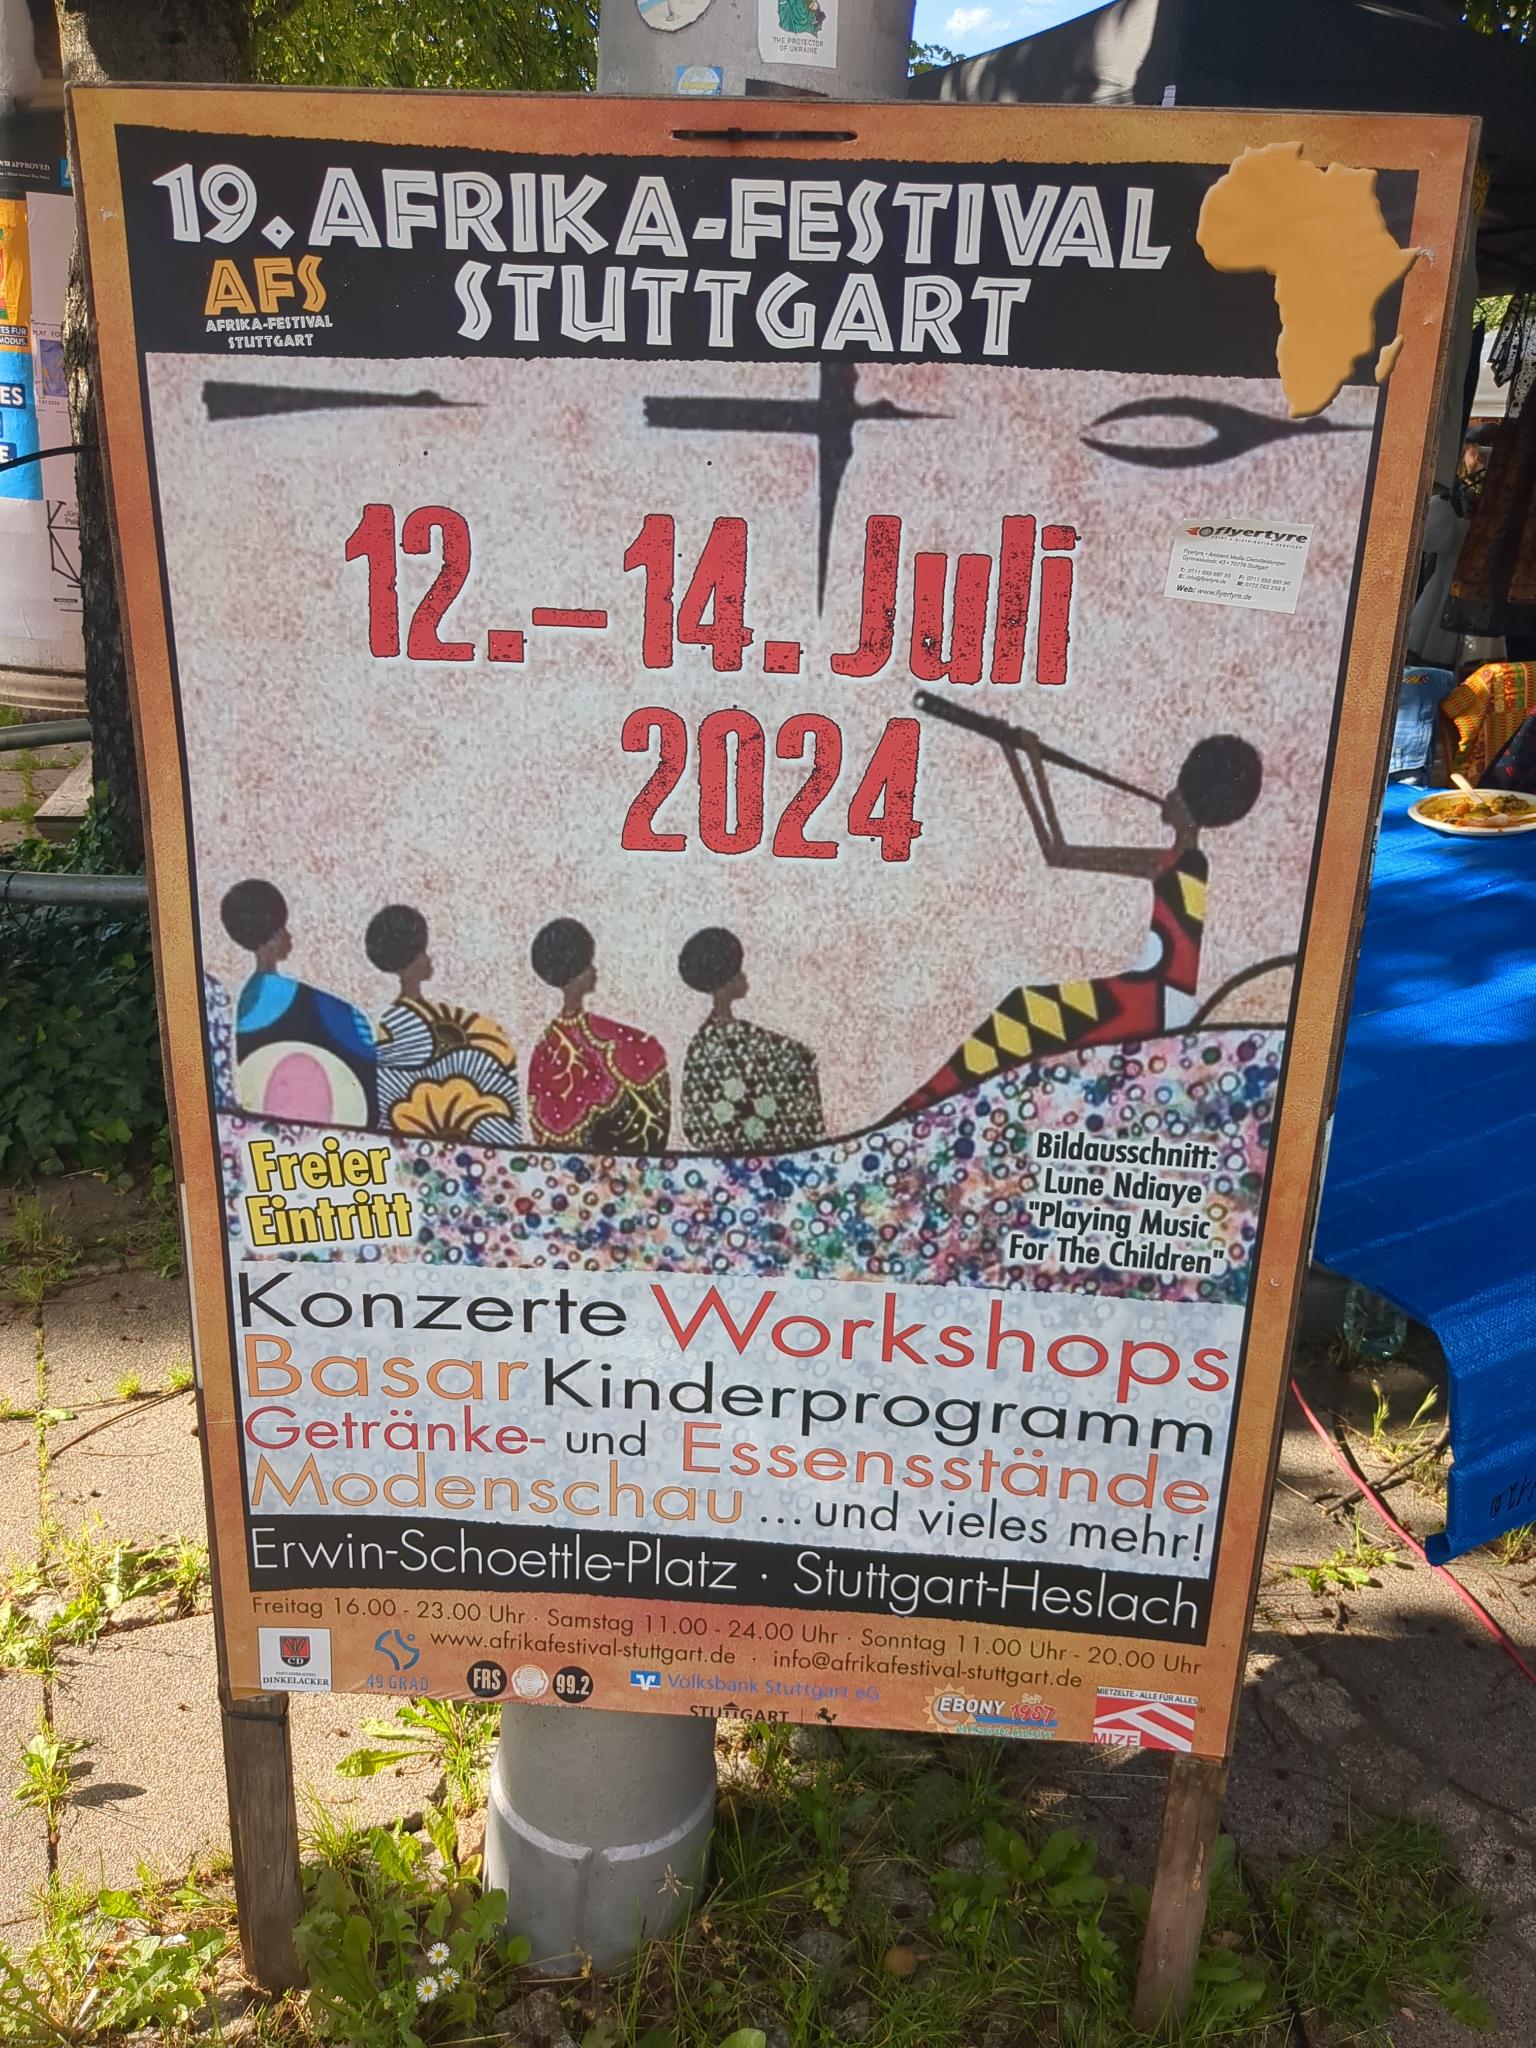 Afrika Festival 2024 in Stuttgart“ -Dieses Festival bringt die Kultur des Handels und Austausch zusammen!“